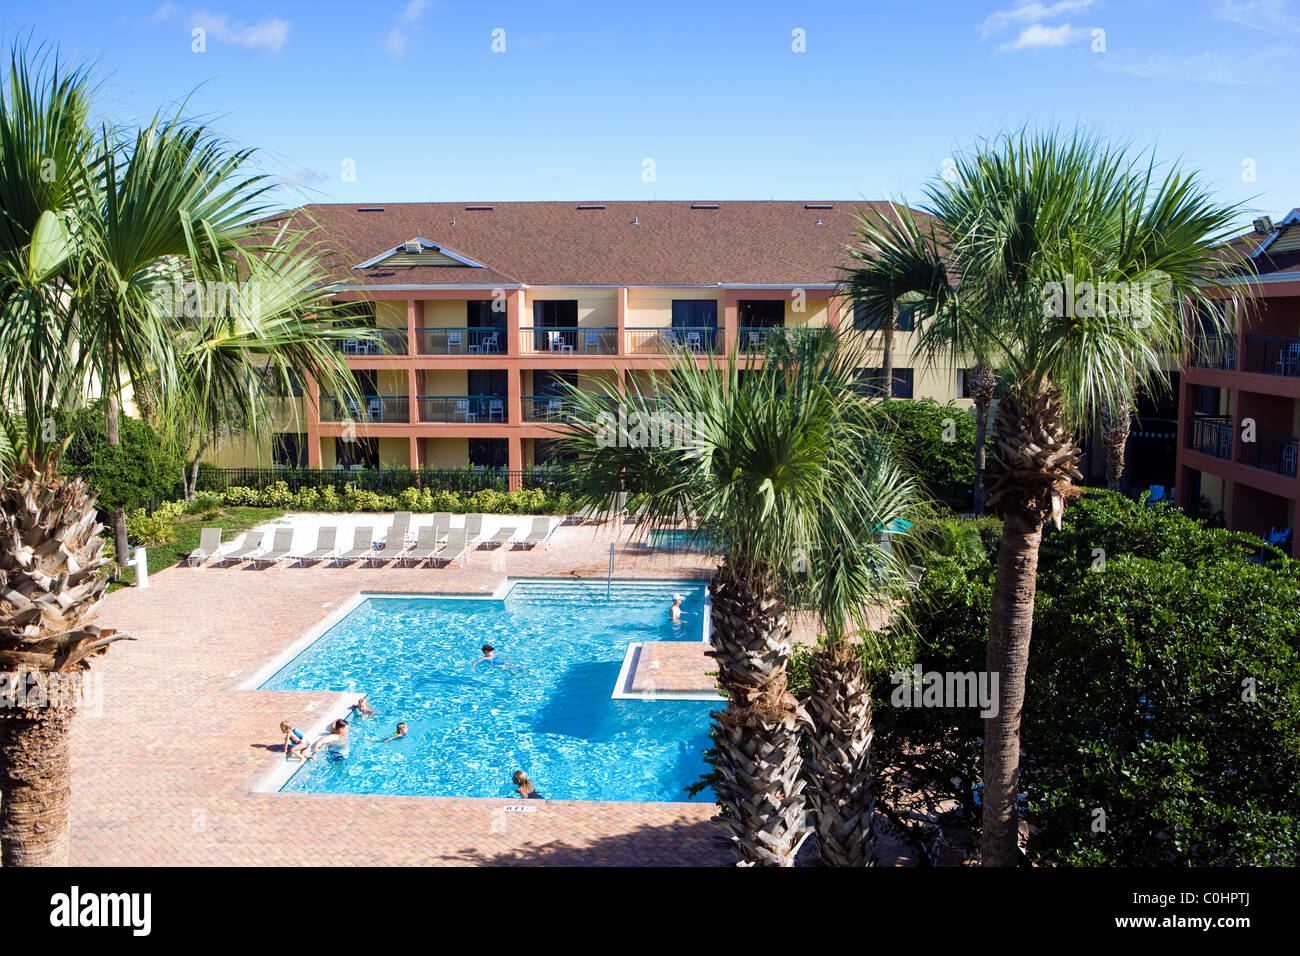 Típico hotel de Florida Y PISCINA Foto de stock